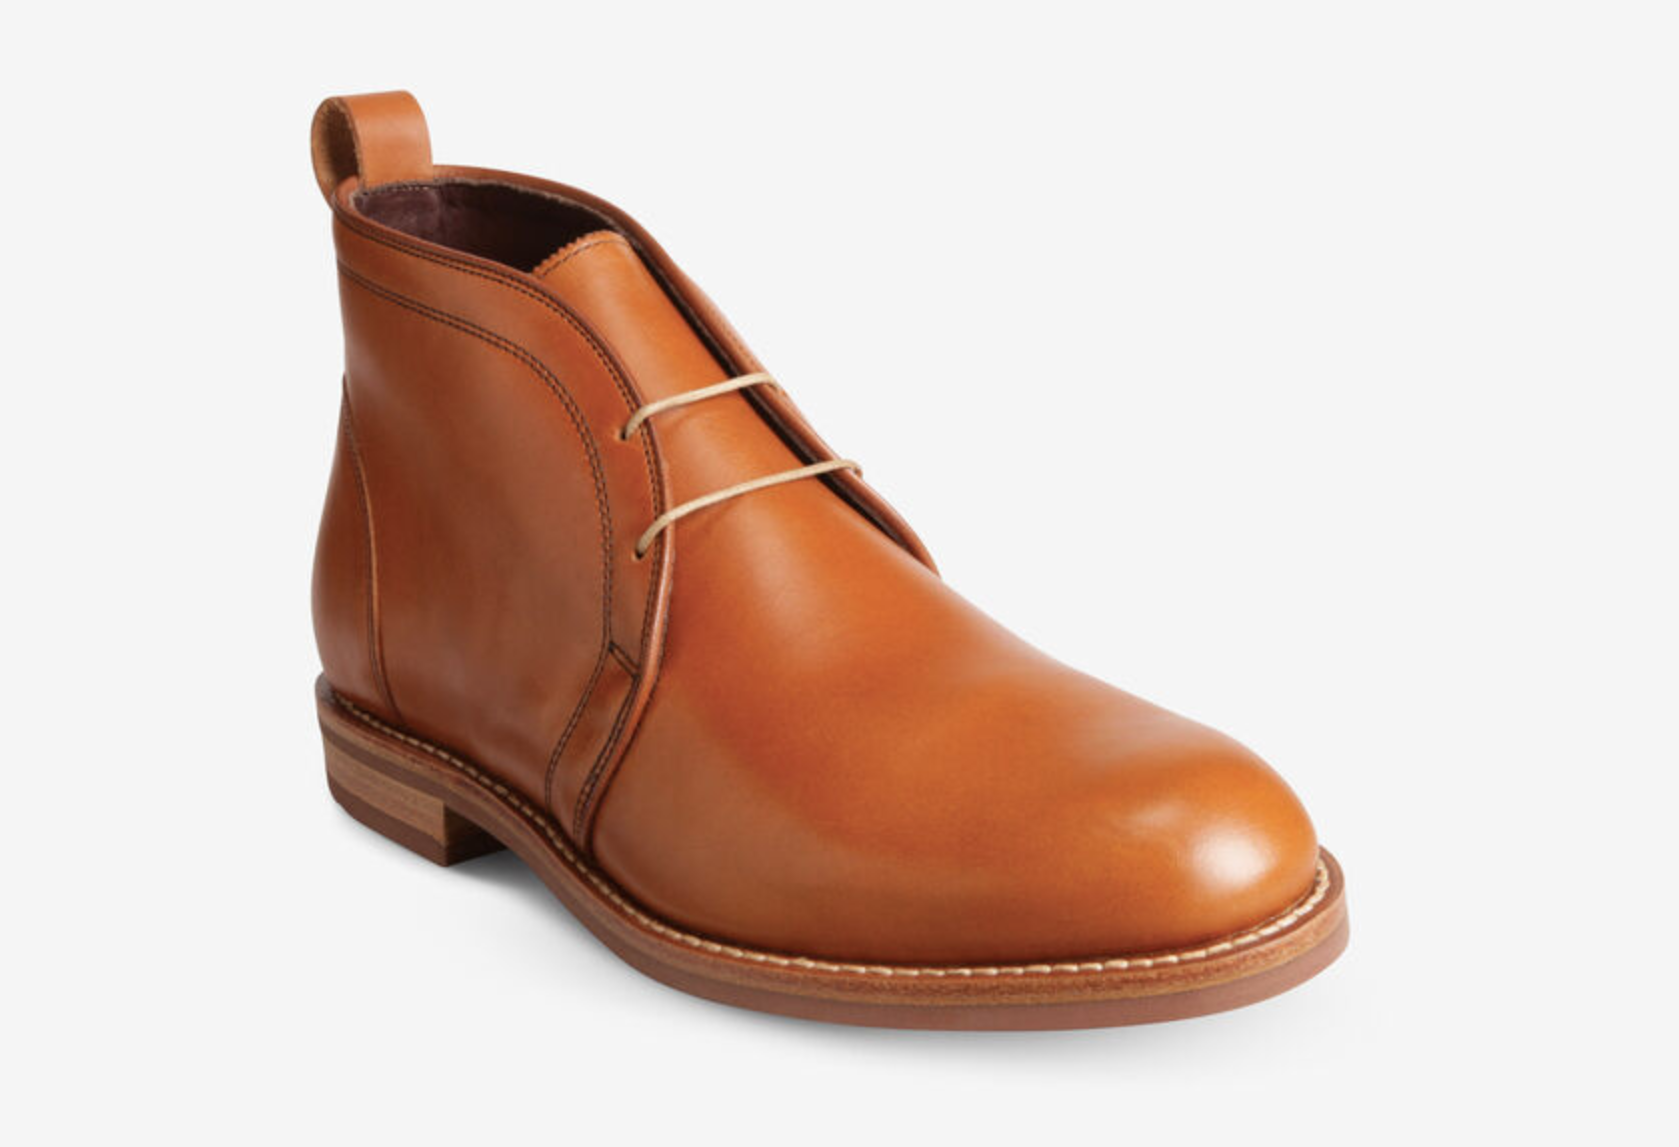 Allen Edmonds Chukka Boots ($200-$375)